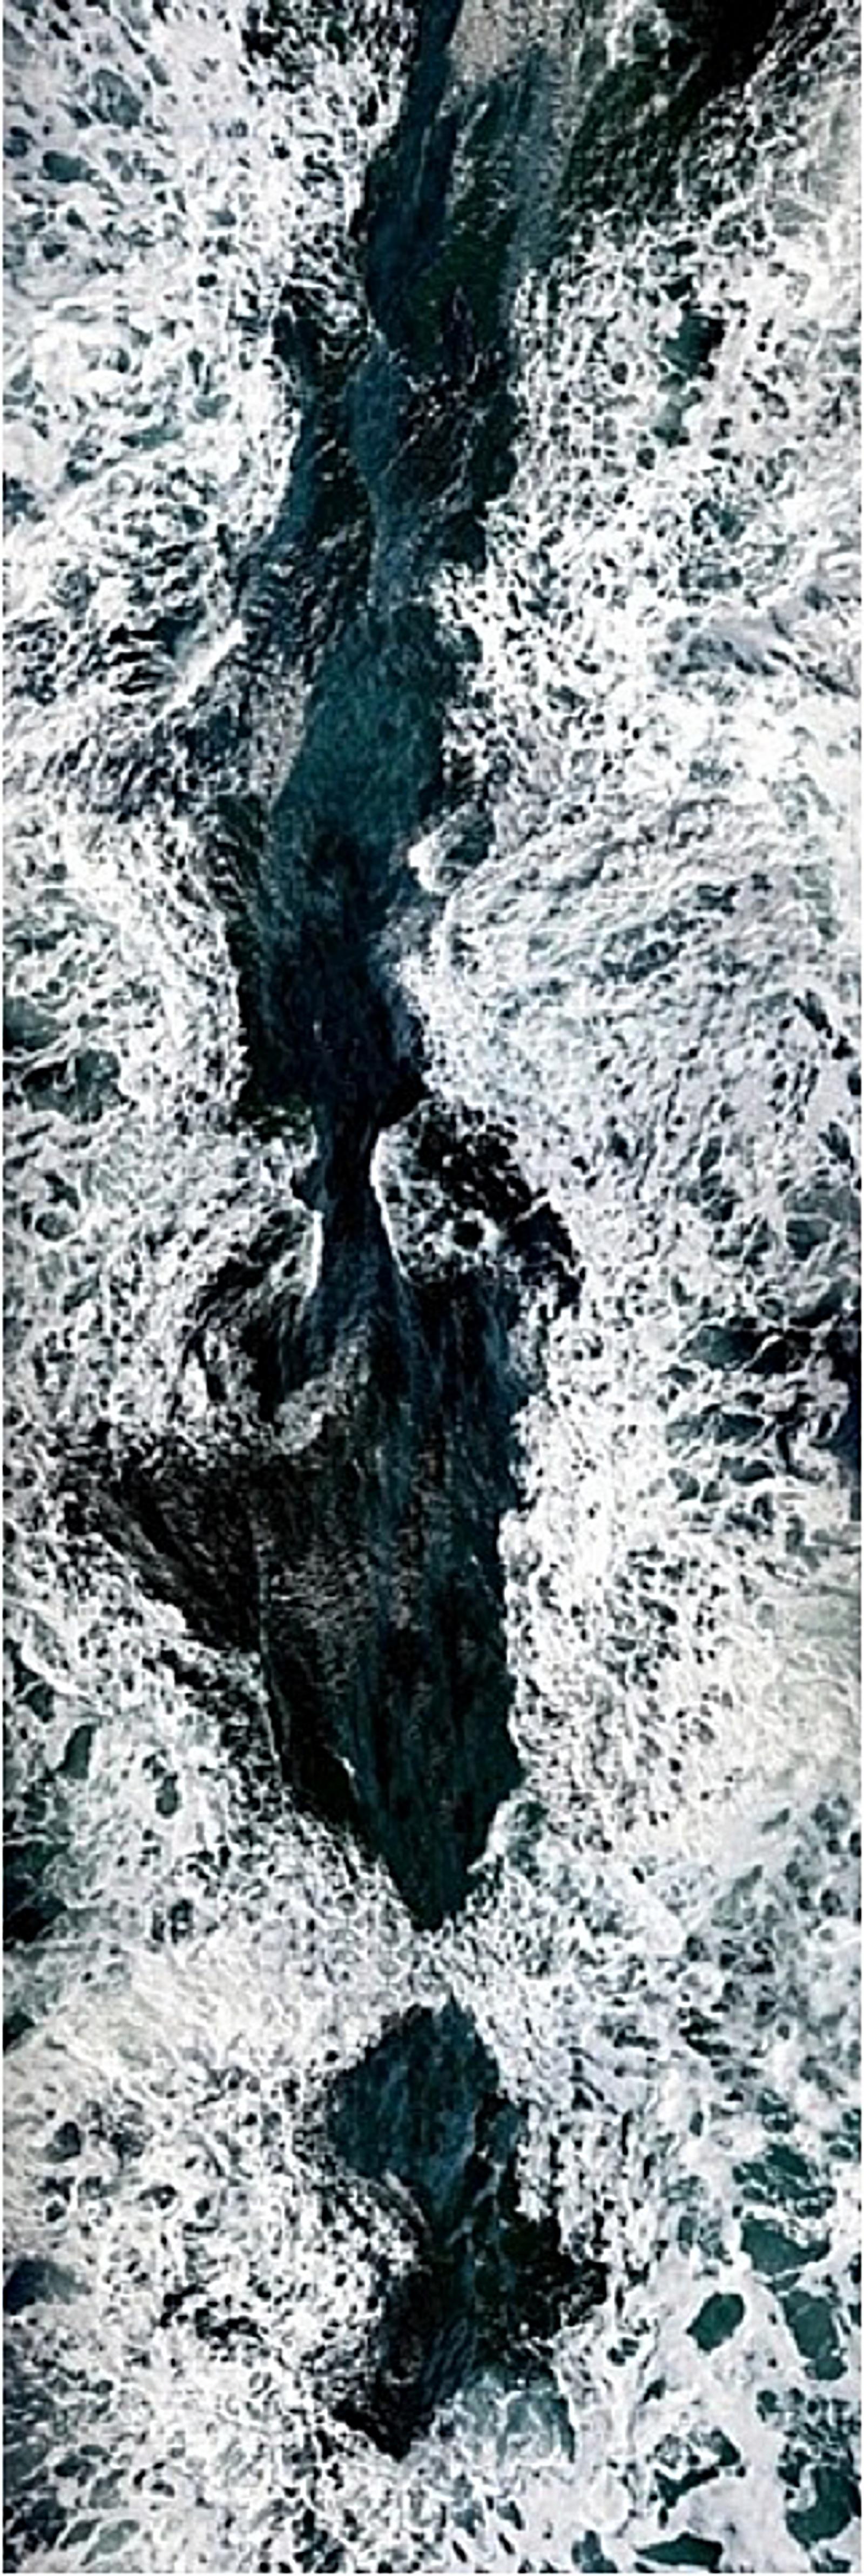 JUN AHN (*1981)
Unsichtbare Seelandschaft #2
2010
HDR-Ultra-Chrom-Archivpigmentdruck
Blatt 304,8 x 101,6 cm (120 x 40 in.)
Ausgabe von 3, plus 1 AP; Ed. Nr. 1/3
Gerahmt nach Angaben des Künstlers: auf Aluminium montiert, Plexiglasaufsatz,